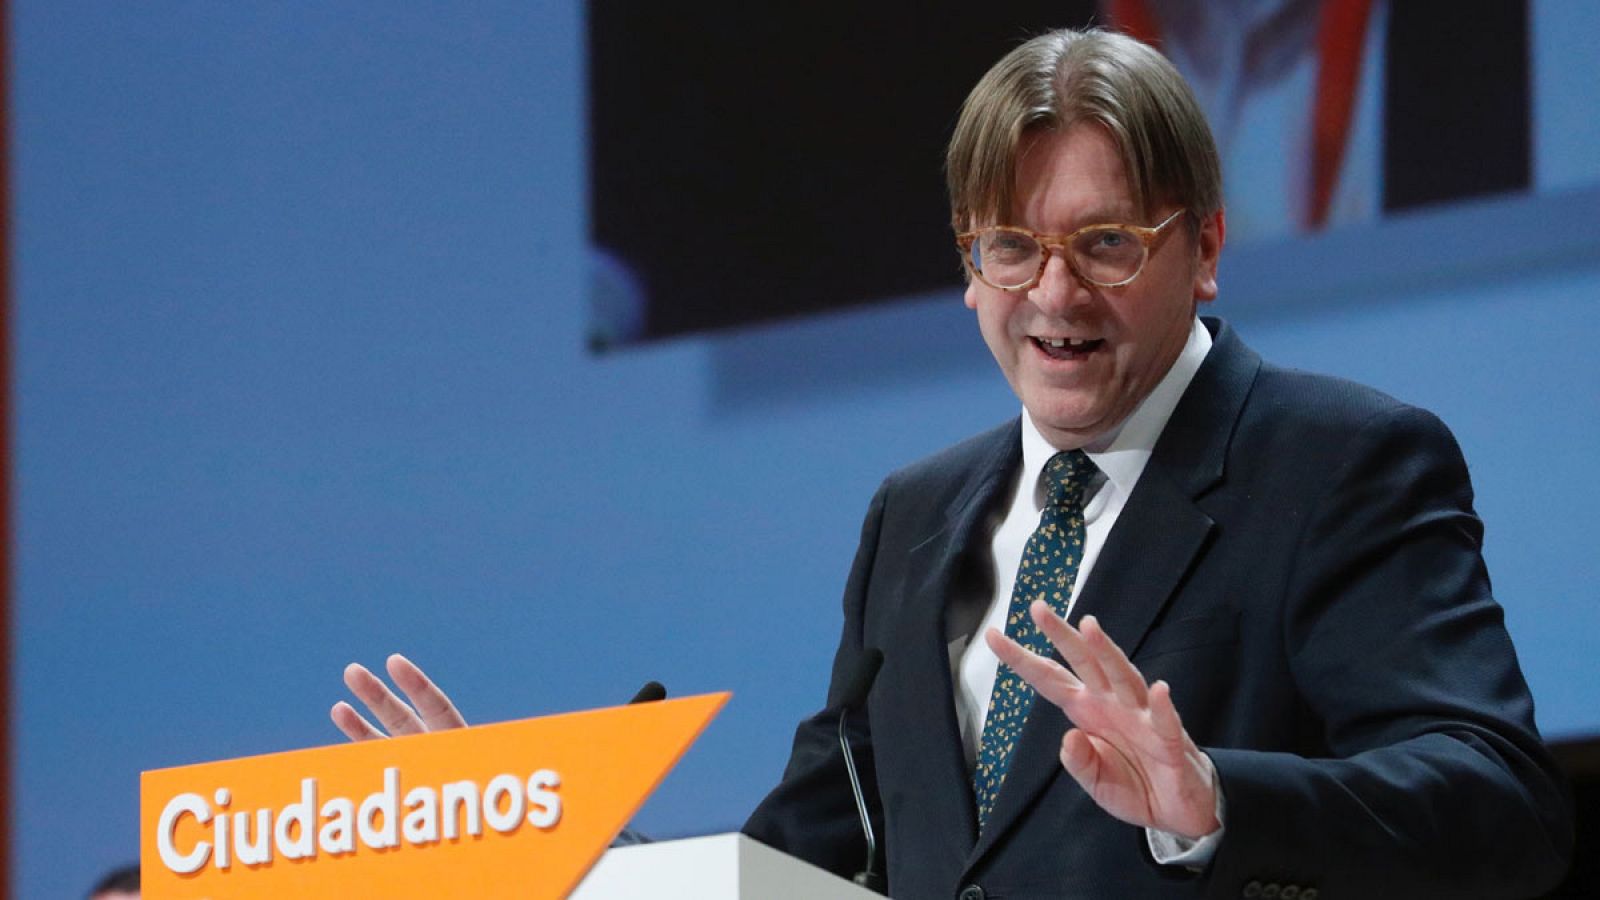 Telediario 1: Guy Verhofstat, líder liberal europeo, advierte a Ciudadanos: "El éxito de la extrema derecha nos debe preocupar a todos" | RTVE Play